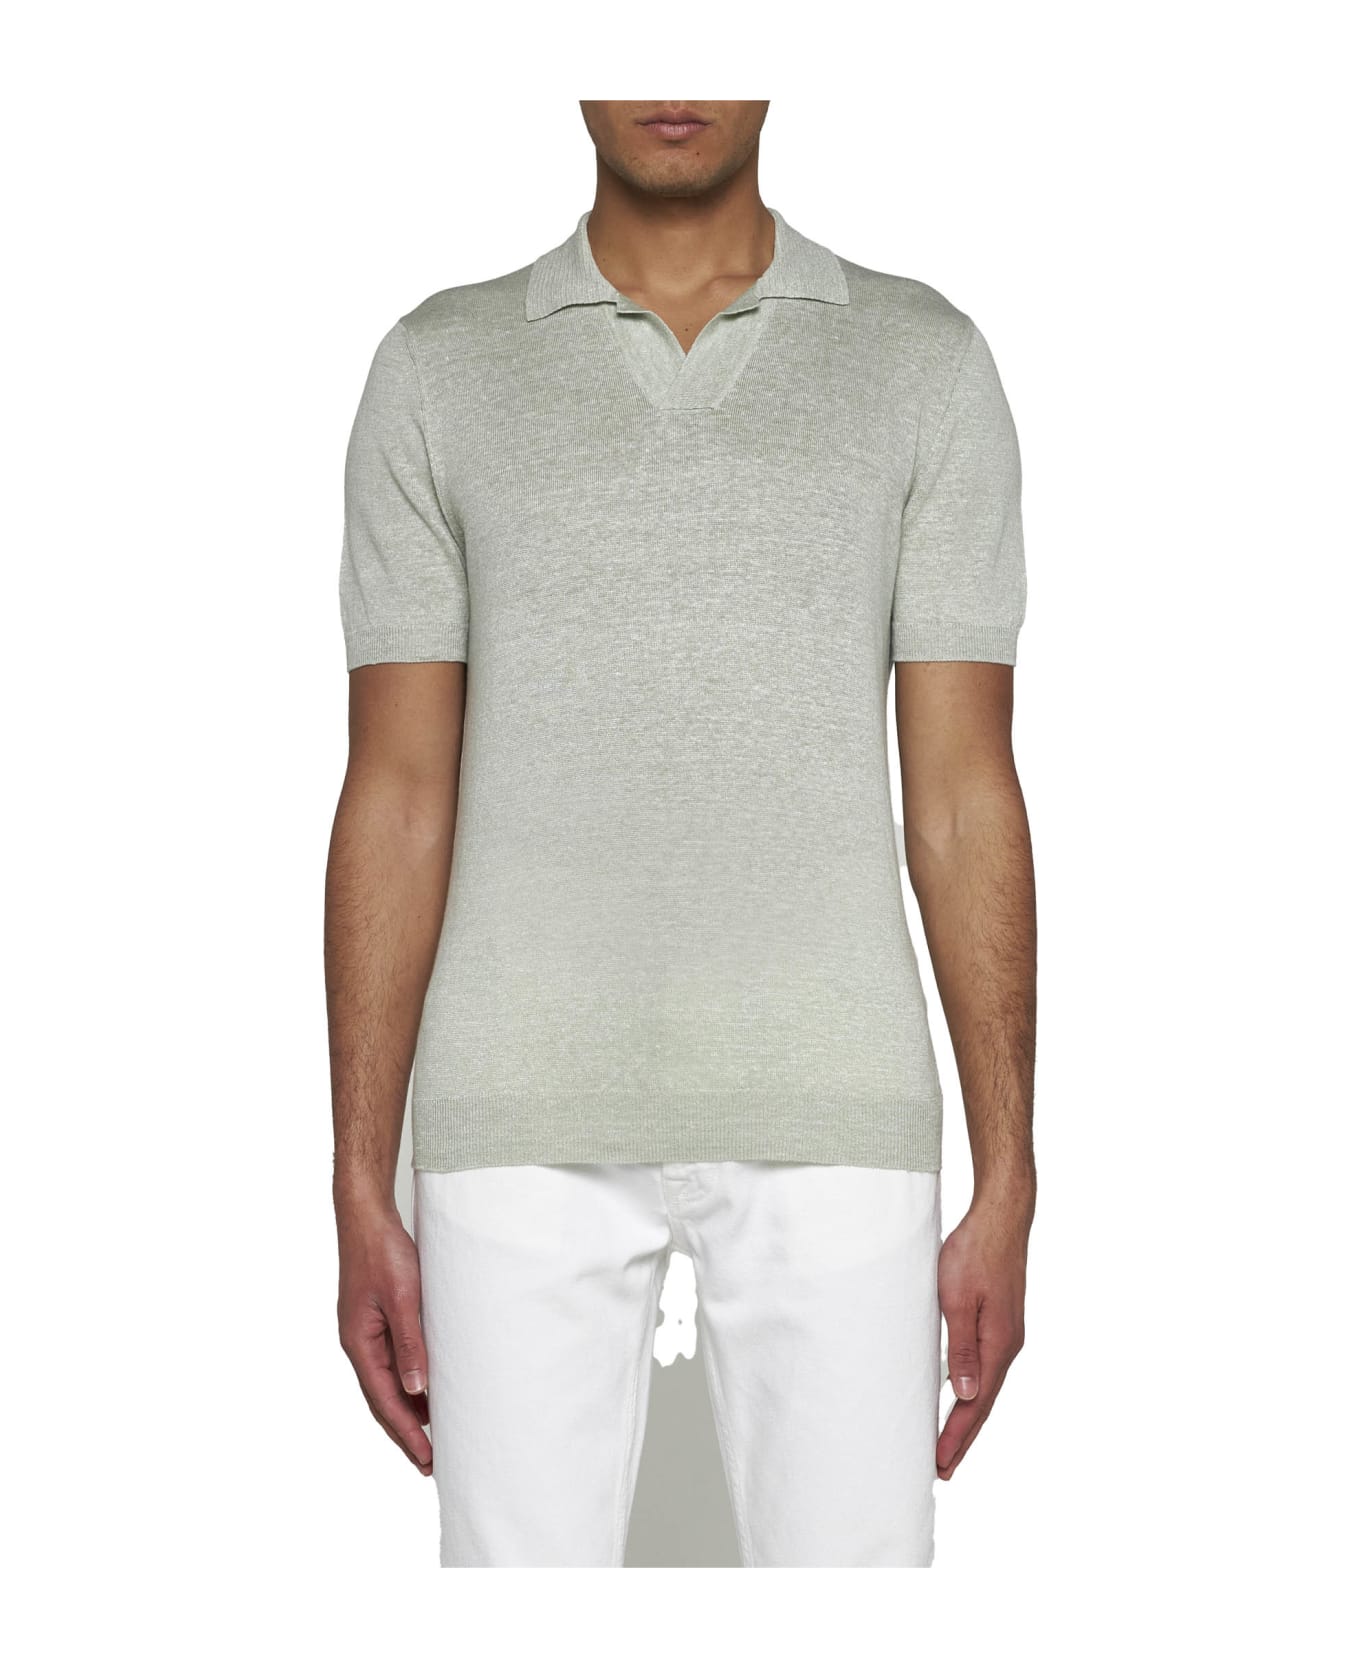 Tagliatore Linen And Cotton Polo Shirt - Verde chiaro ポロシャツ